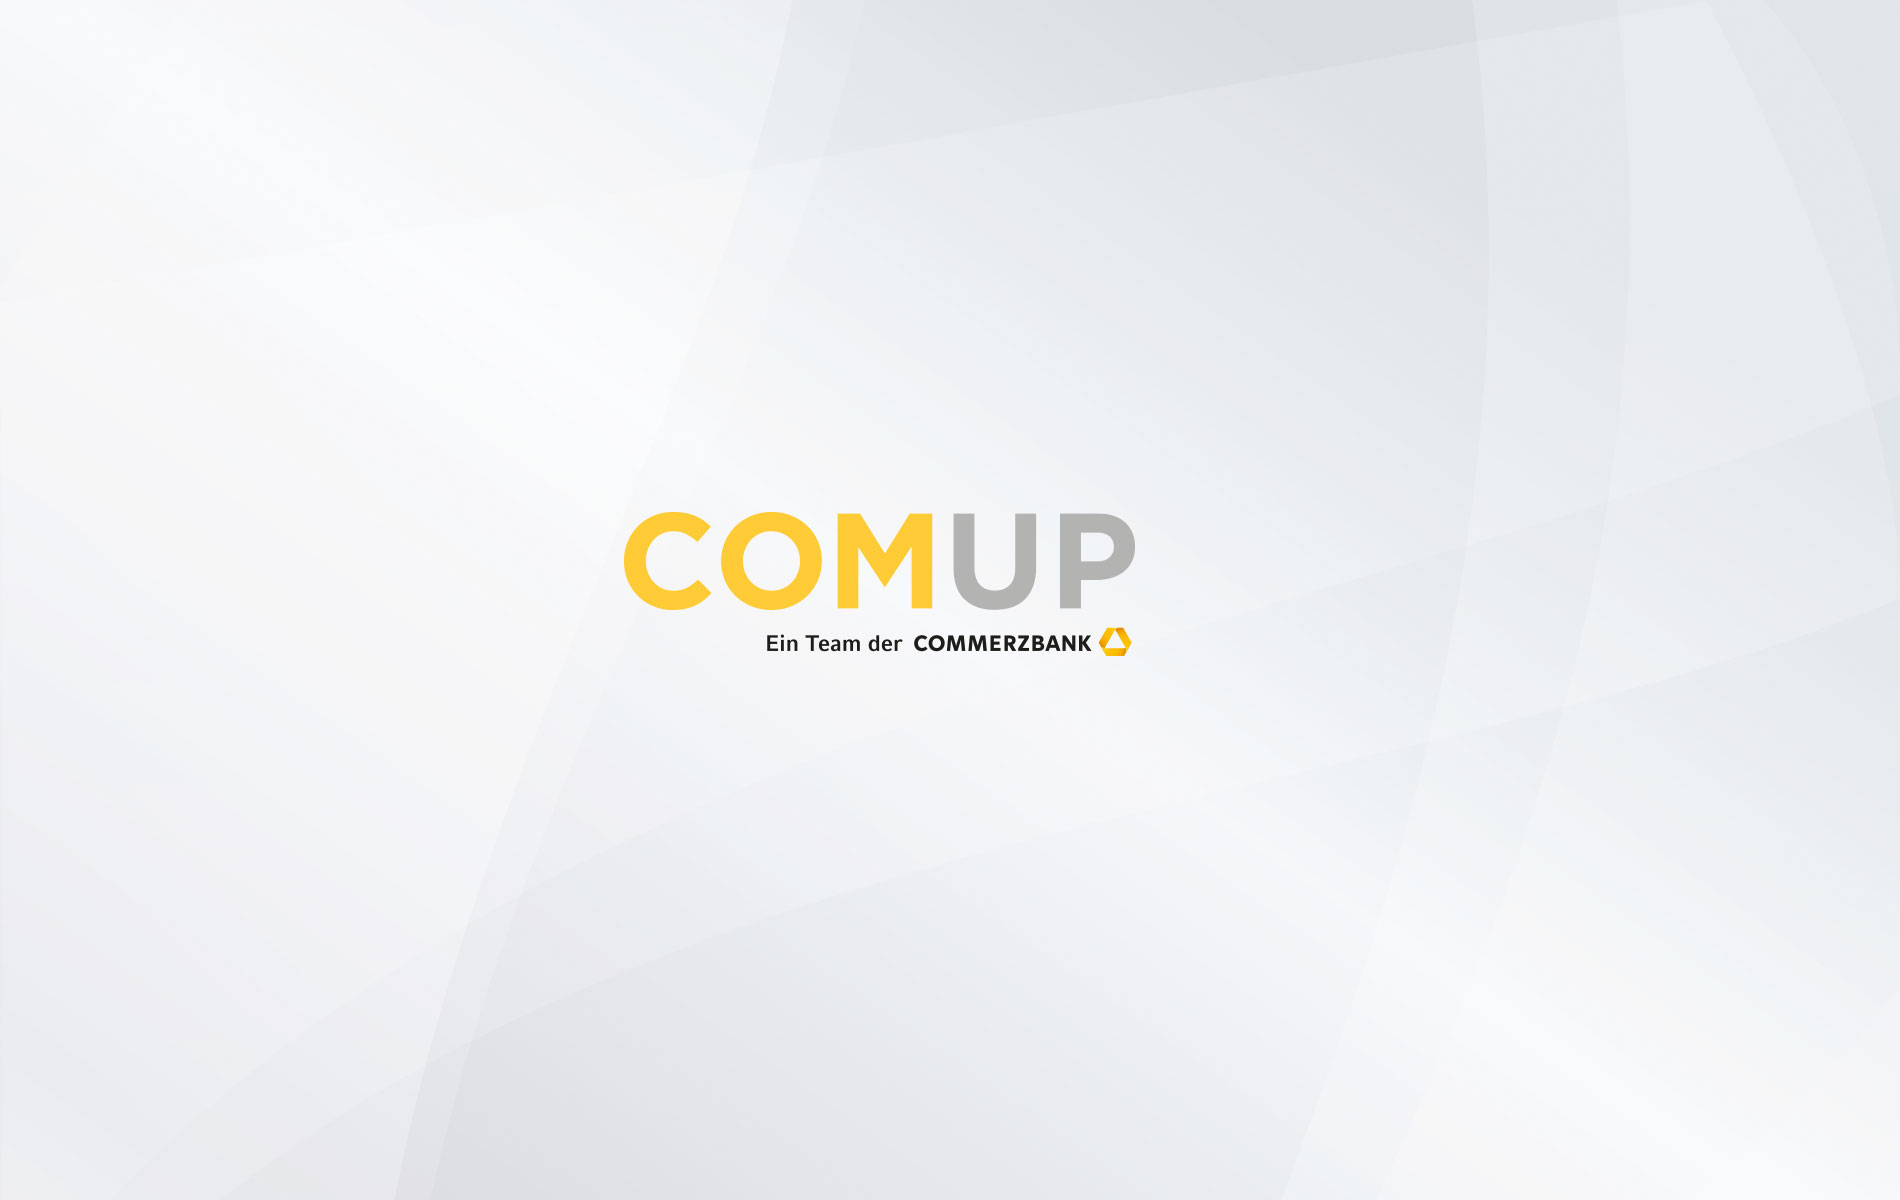 Markenname: Die Startup-Beratung der Commerzbank AG heißt COMUP